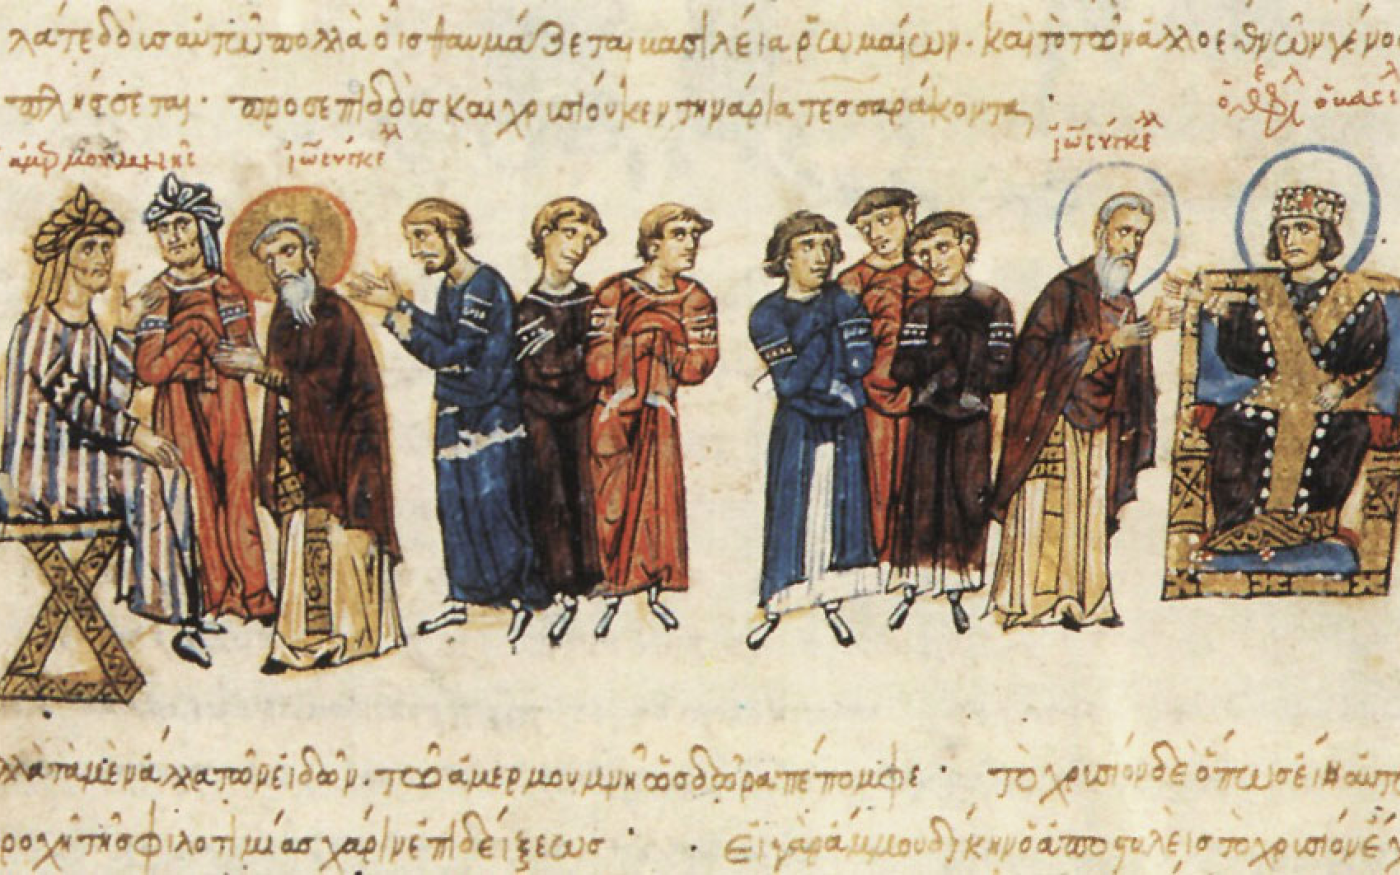 Le calife abbasside al-Ma’mun (à gauche), qui a régné pendant les premières années de la vie d’al-Dunya, était un fervent partisan de l’érudition (manuscrit du XIIe/XIIIe siècle/Bibliothèque nationale de Madrid)